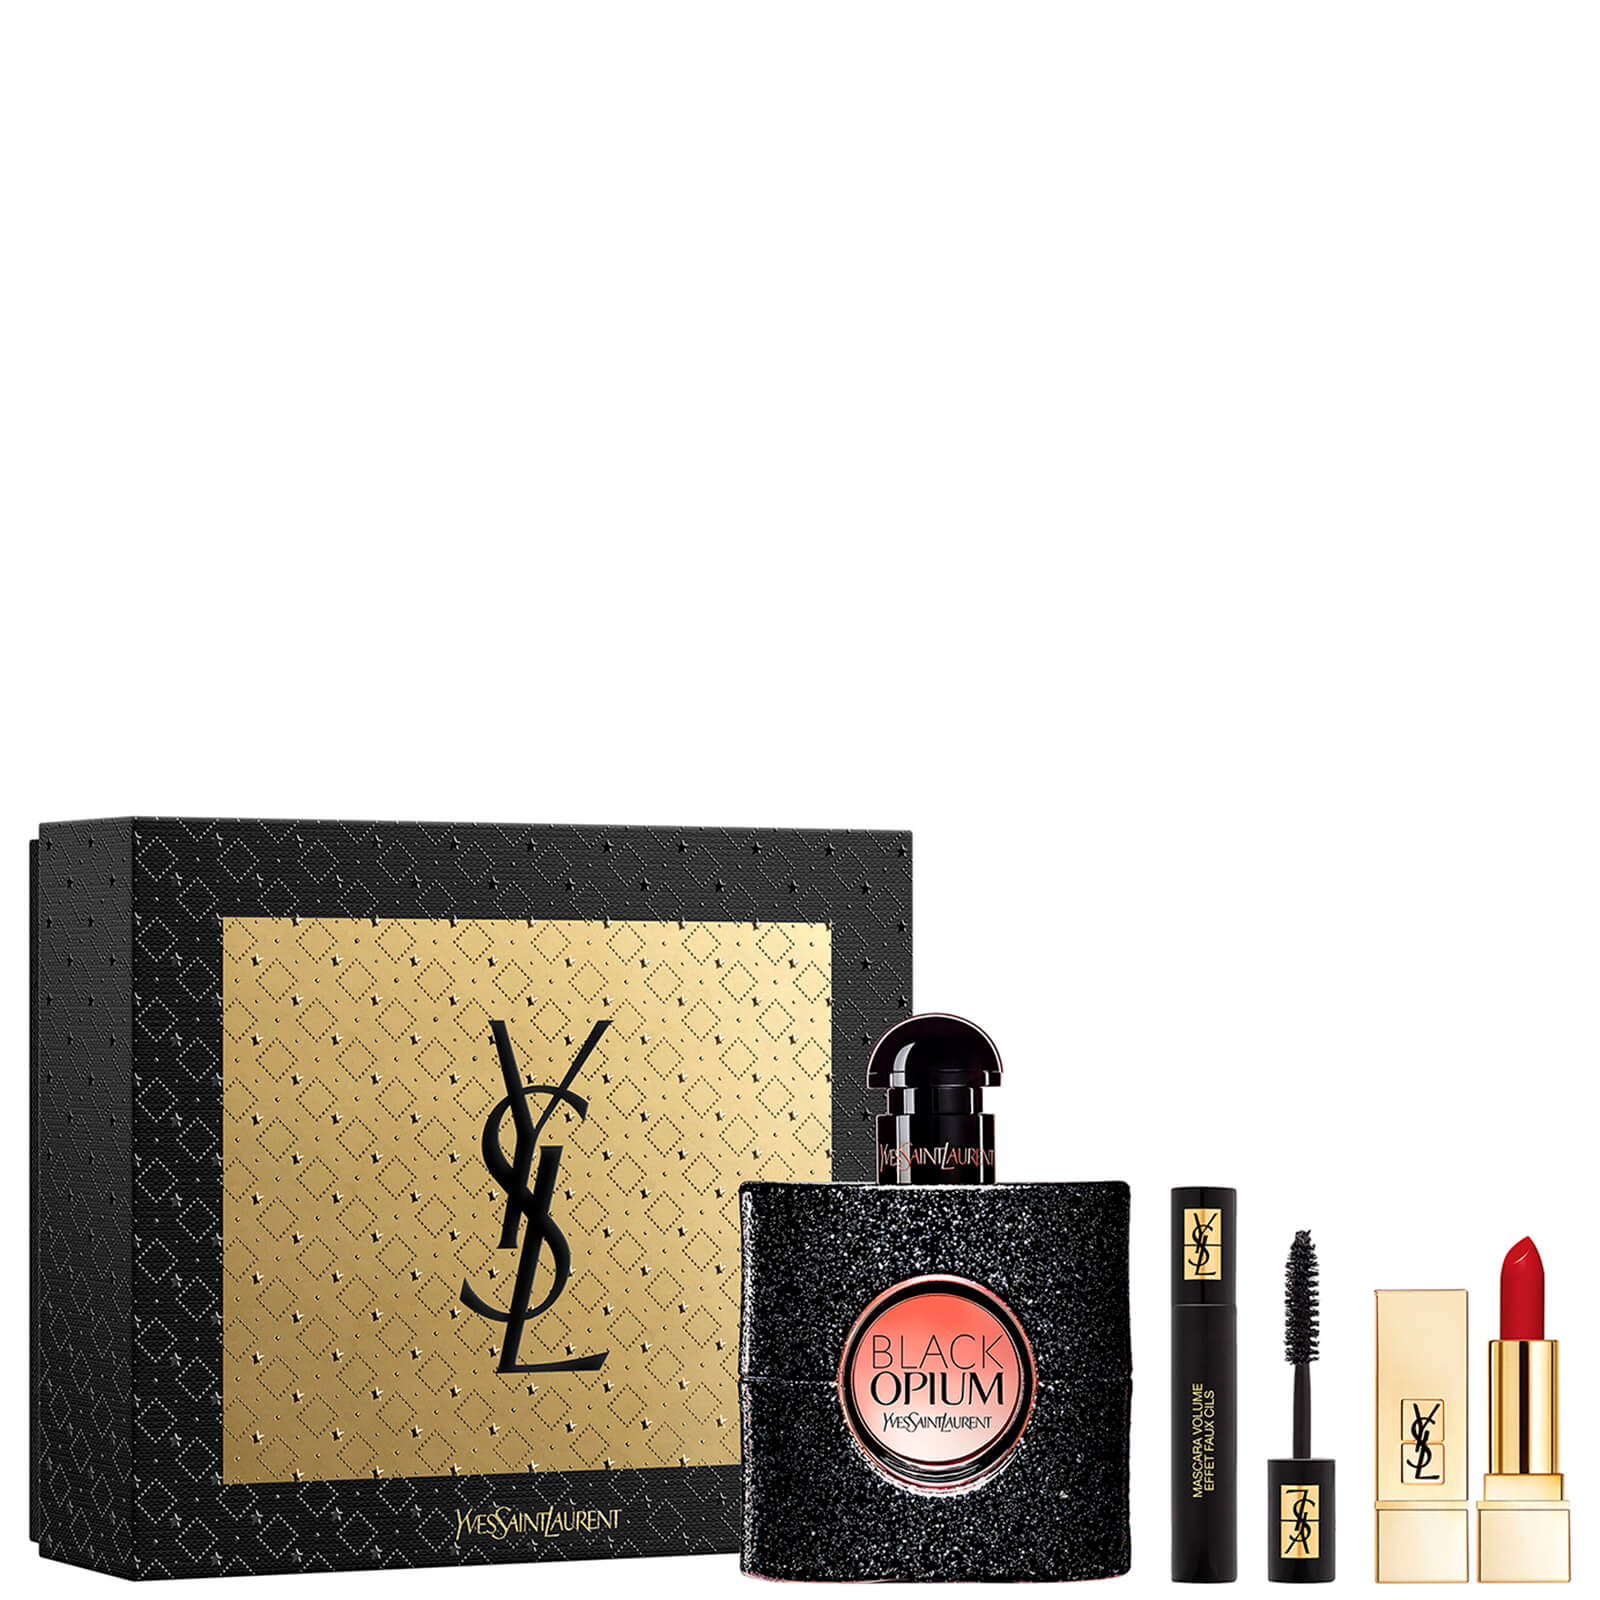 Yves Saint Laurent Black Opium Eau de Parfum and Makeup Icons Gift Set (Worth £103.00)